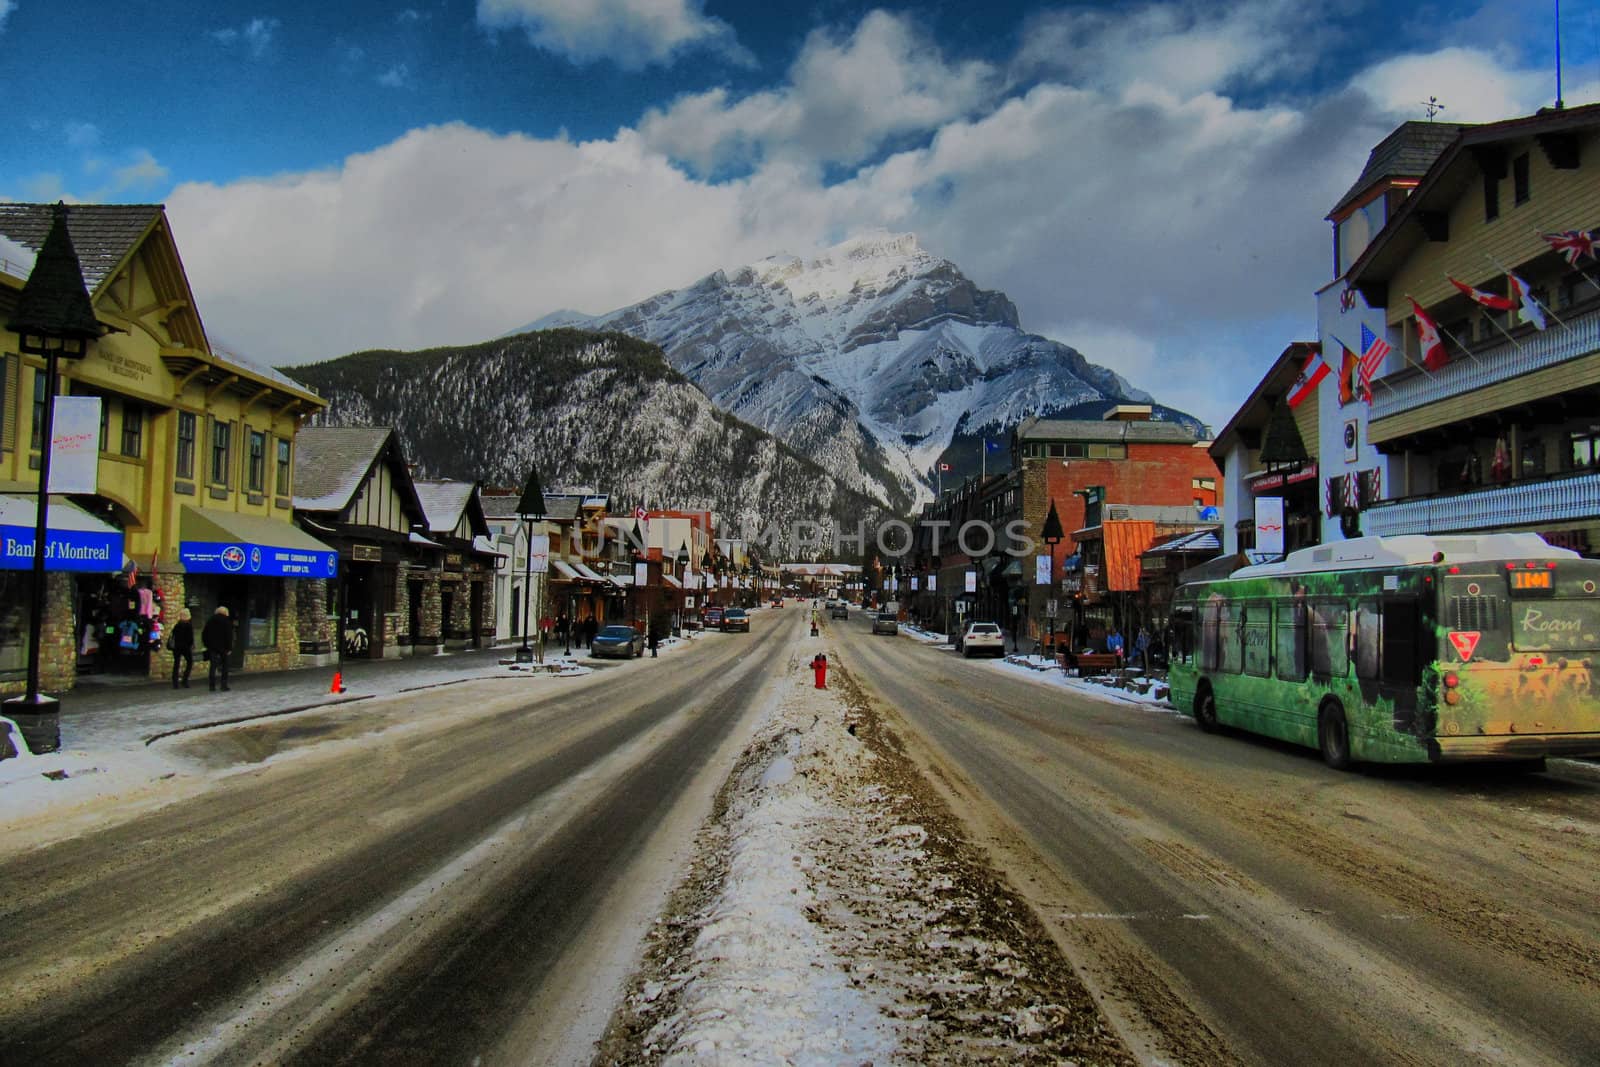 Banff town centre by chrisga